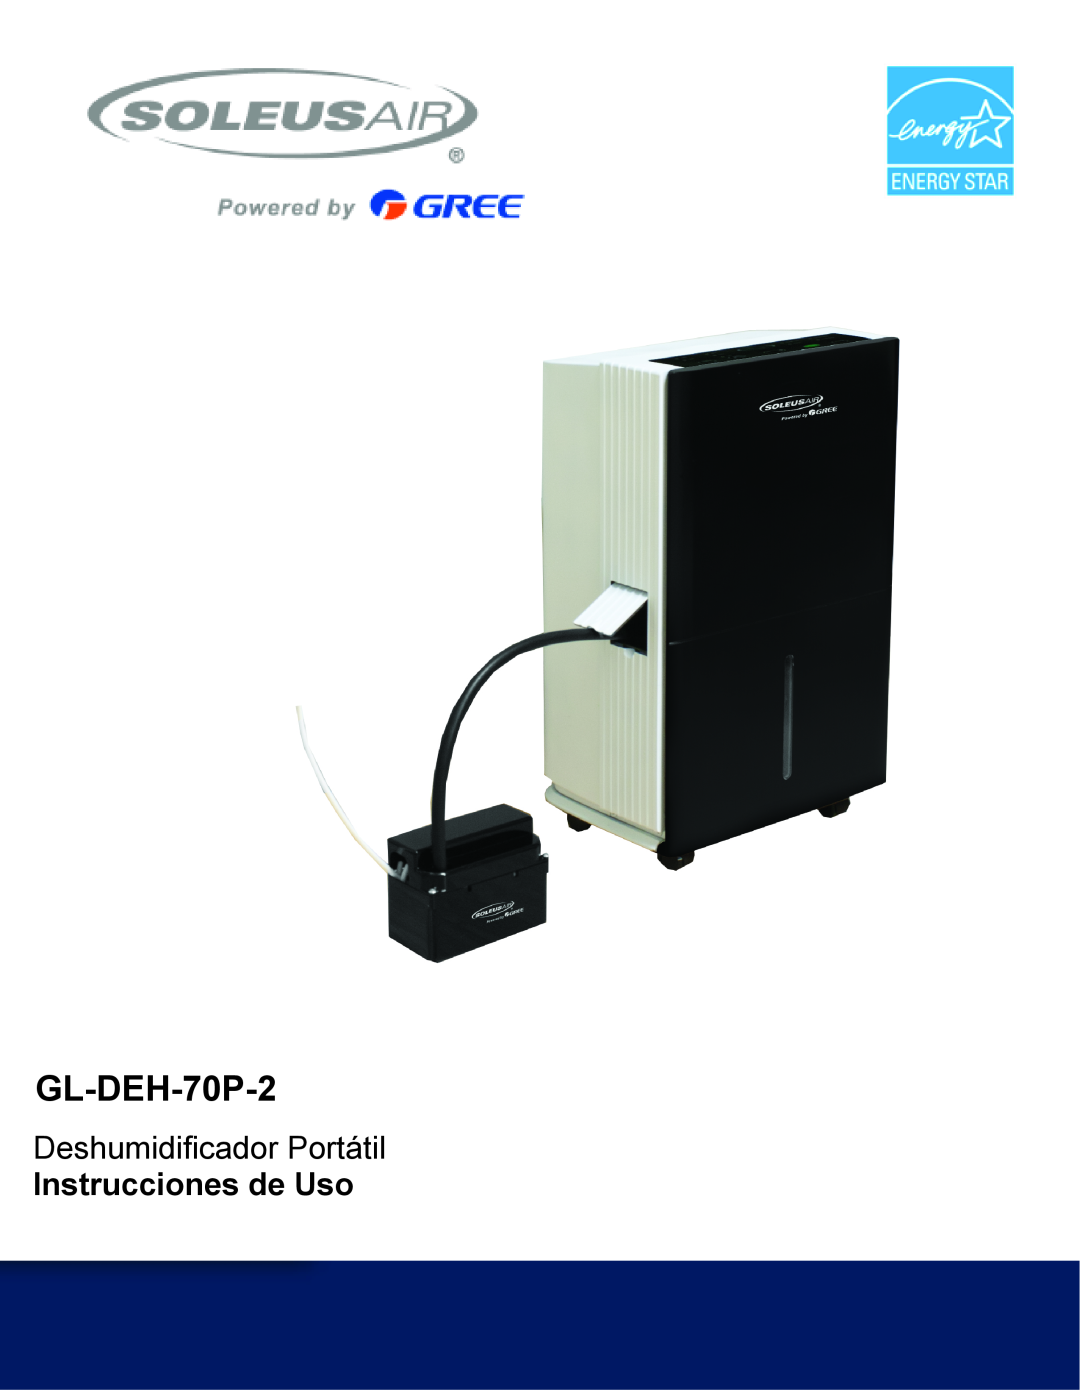 Soleus Air GL-DEH-70P-2 operating instructions Deshumidificador Portátil, Instrucciones de Uso 